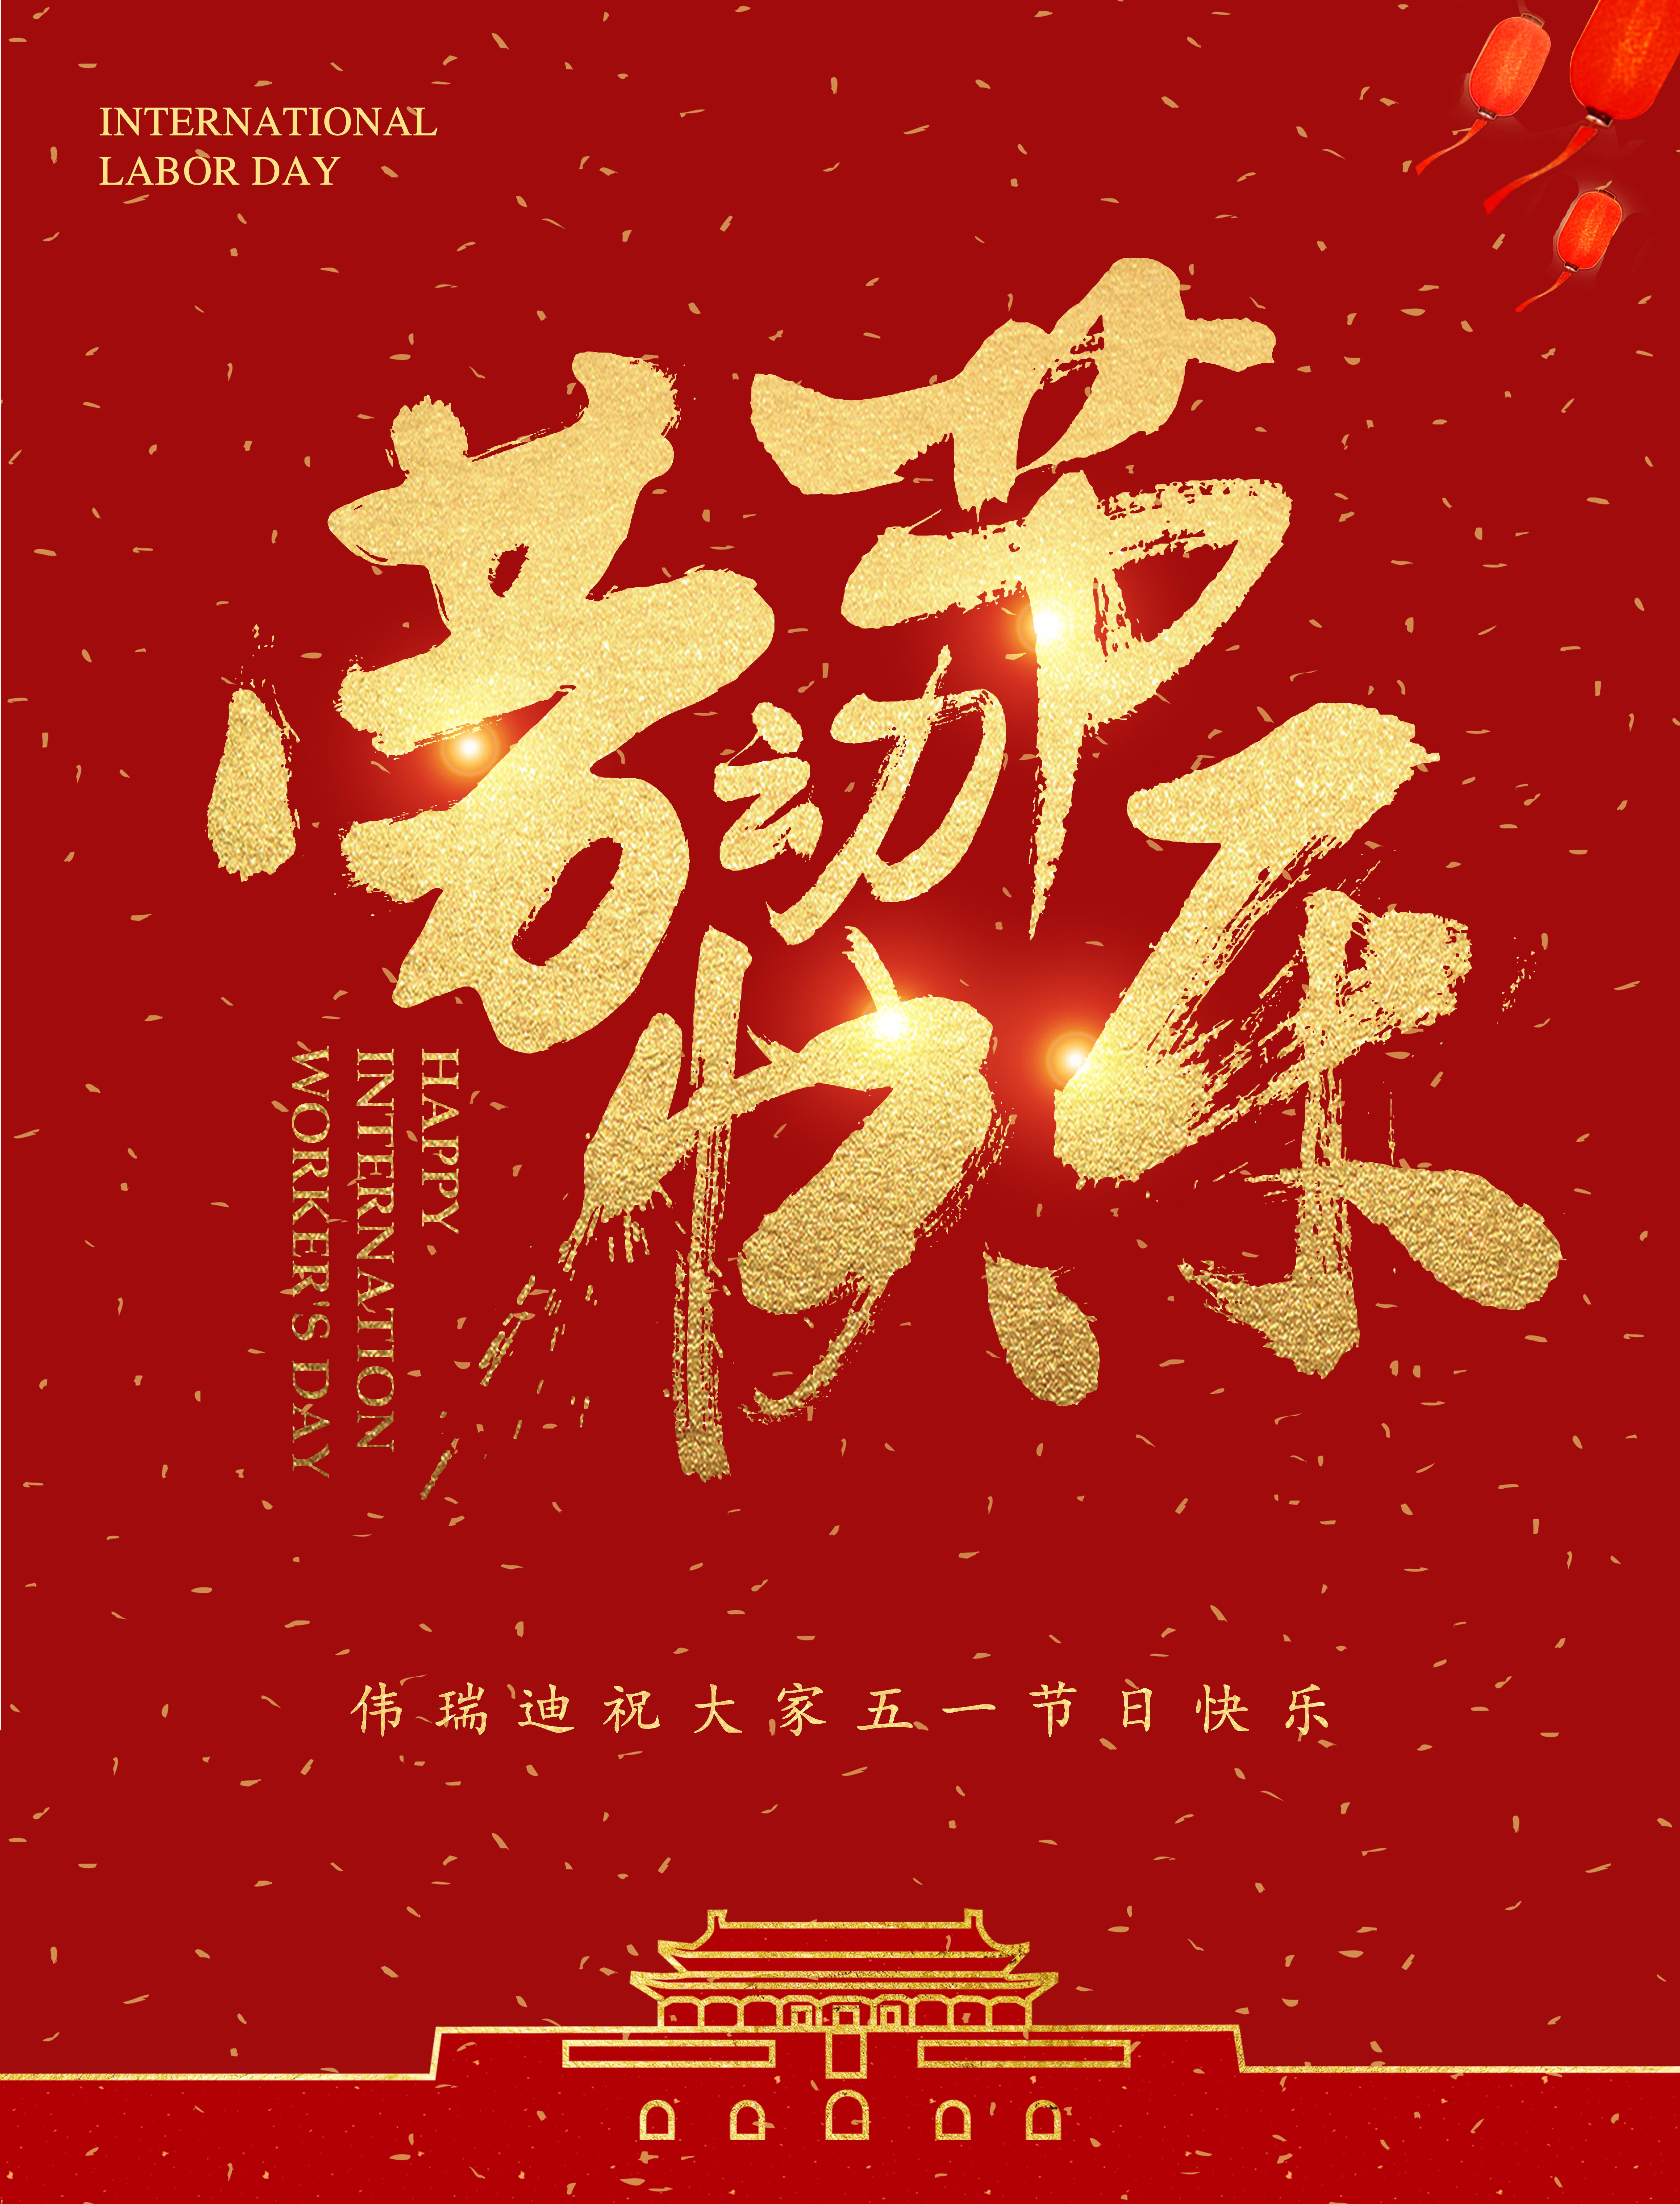 北京伟瑞迪科技有限公司,祝各位朋友五一节日快乐